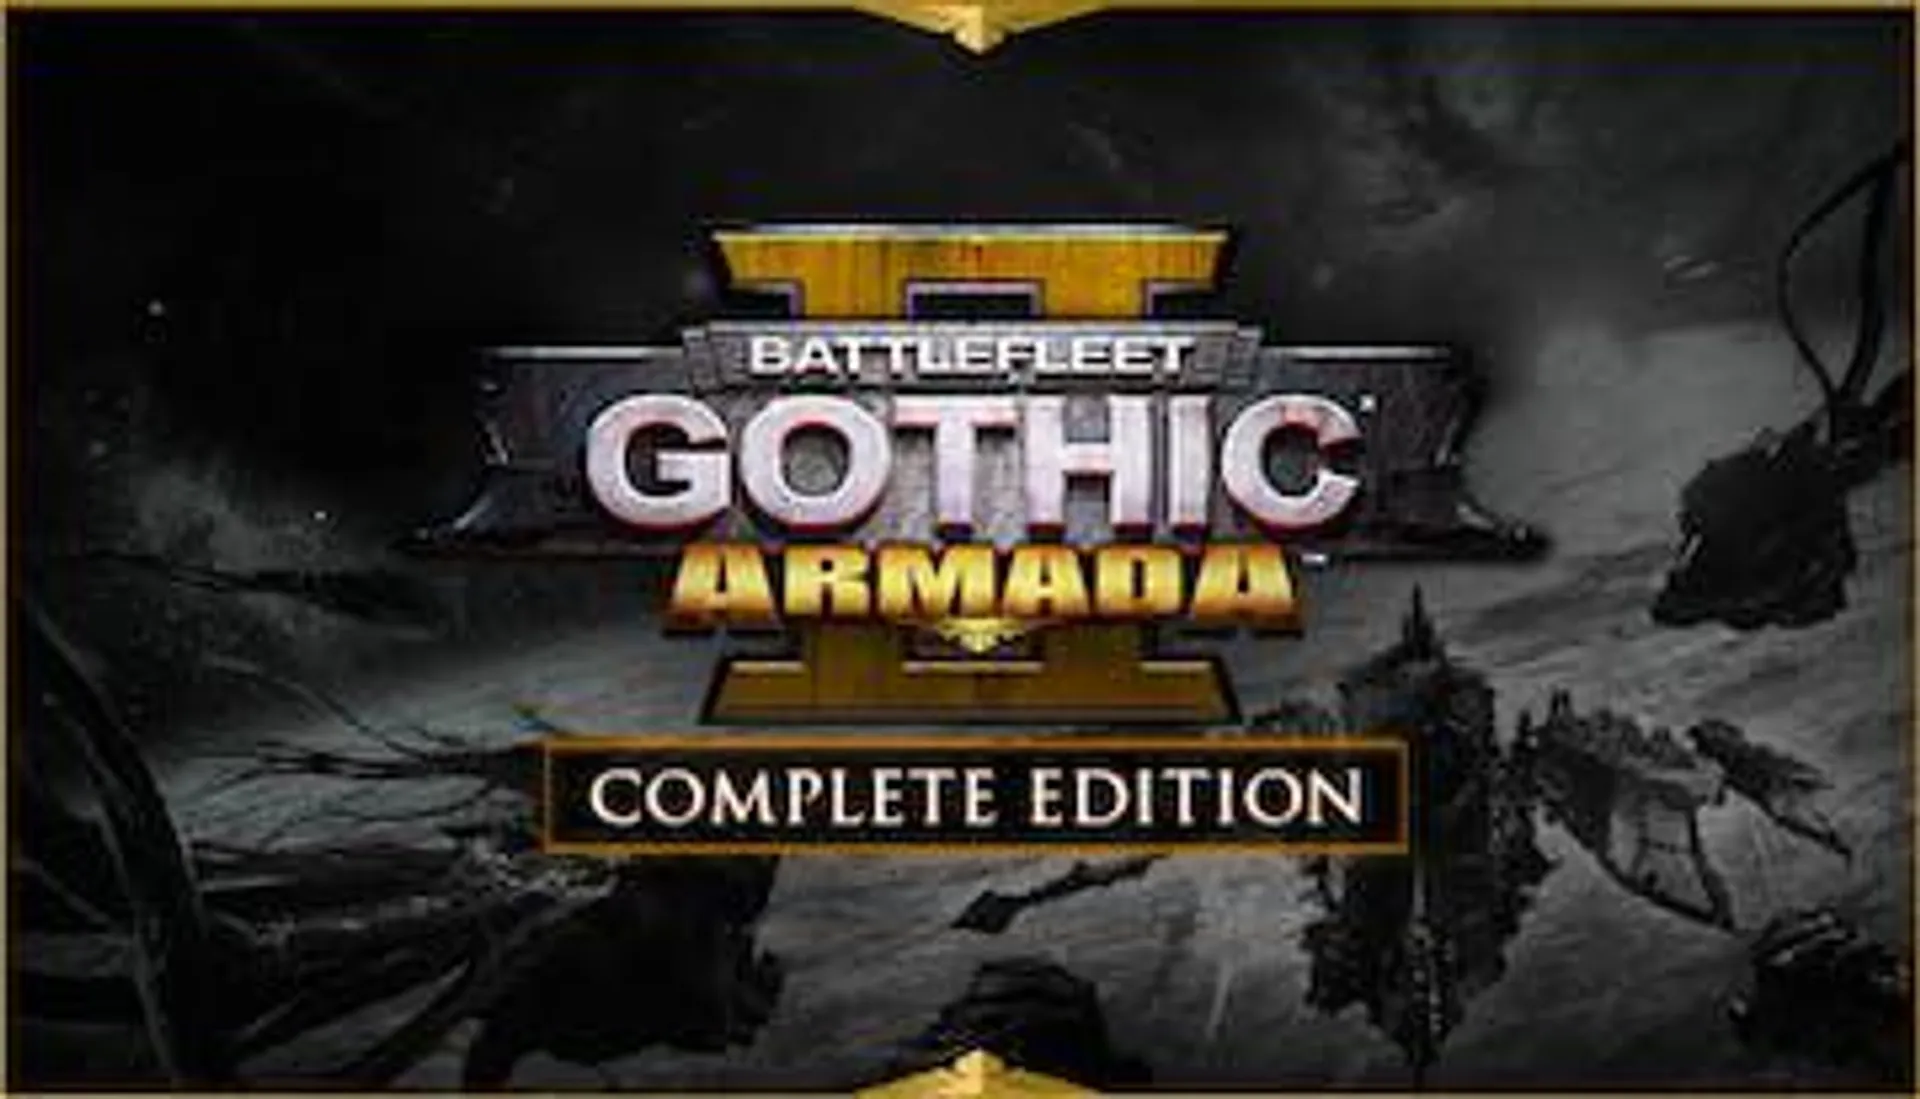 Battlefleet Gothic: Armada 2 - Complete Edition